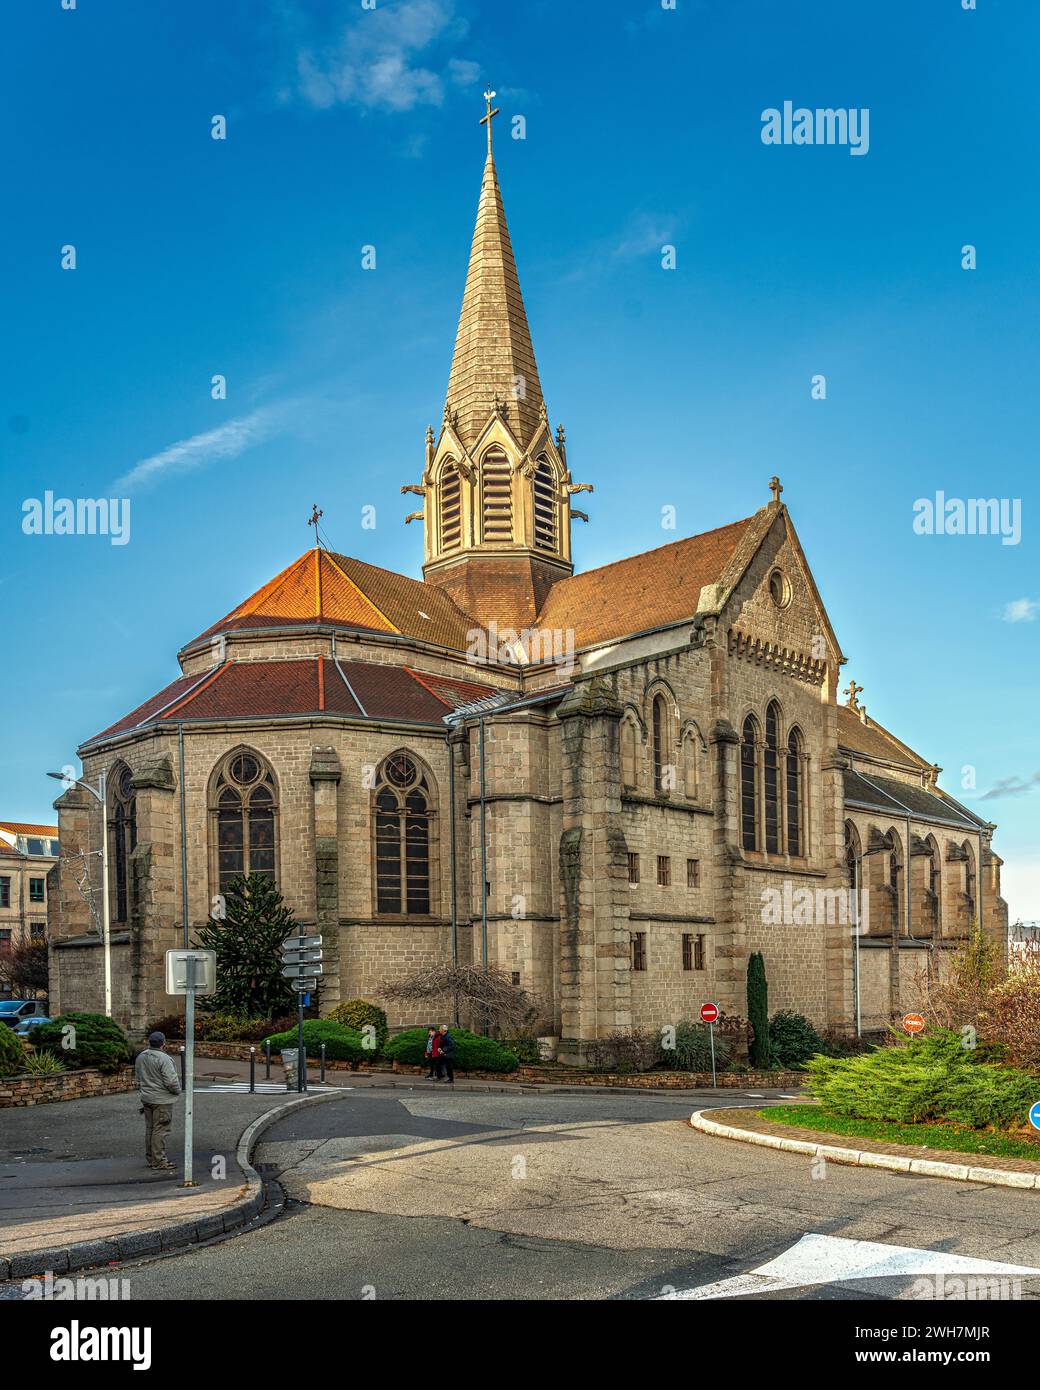 Absidi e campanile della chiesa neogotica di Firminy dedicata a San Firmin. Firminy, dipartimento della Loira, regione Auvergne Rhône Alpes, Francia Foto Stock